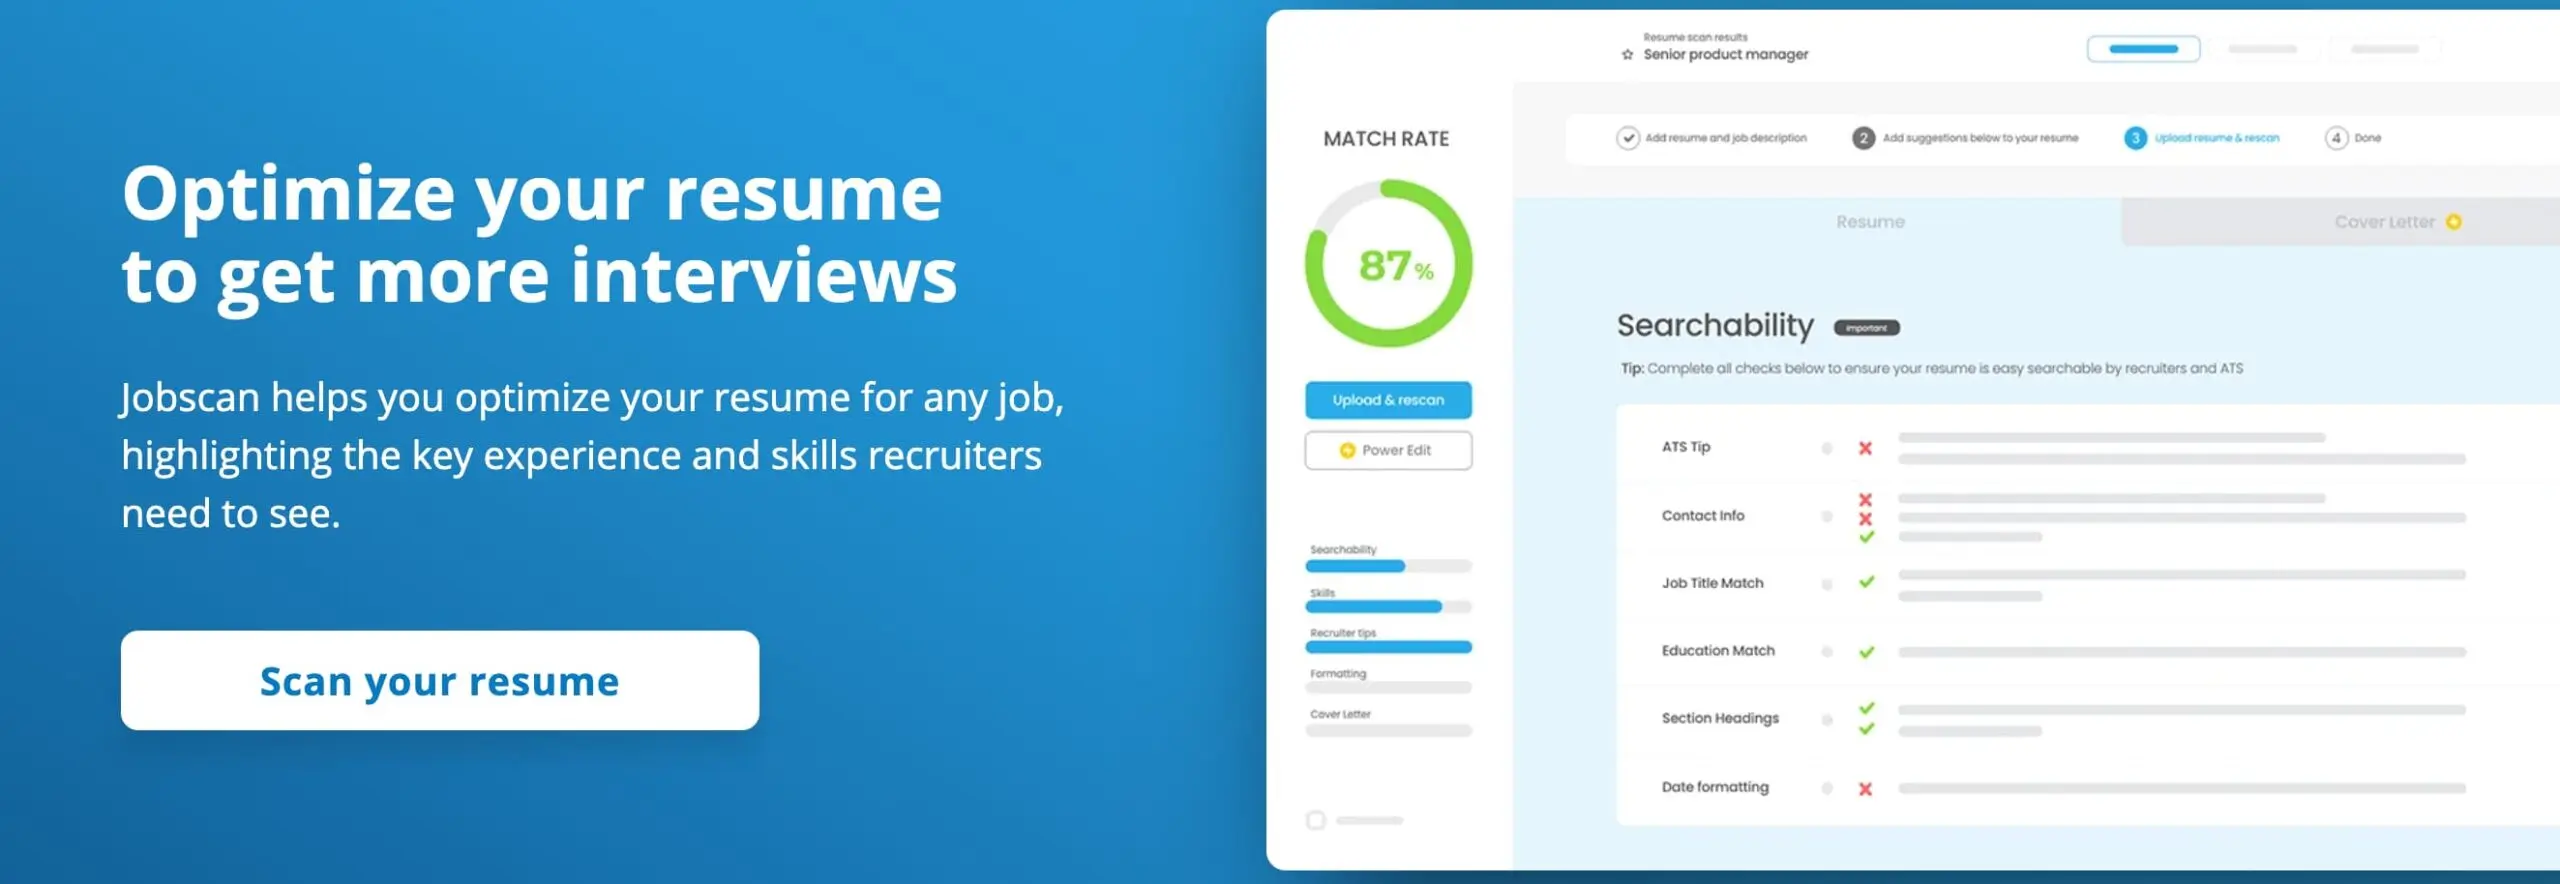 A screenshot from the jobscan website, an AI job search tool